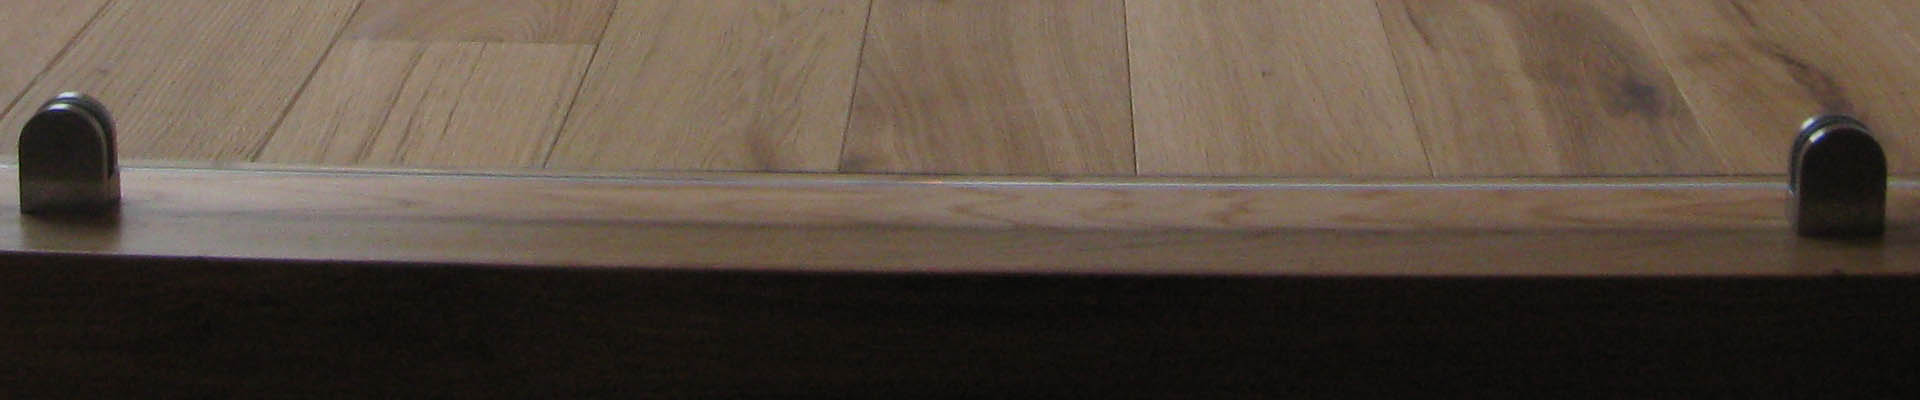 09b.Schody dębowe w naturalnym kolorze, klejone do betonu. wykonane z litego drewna